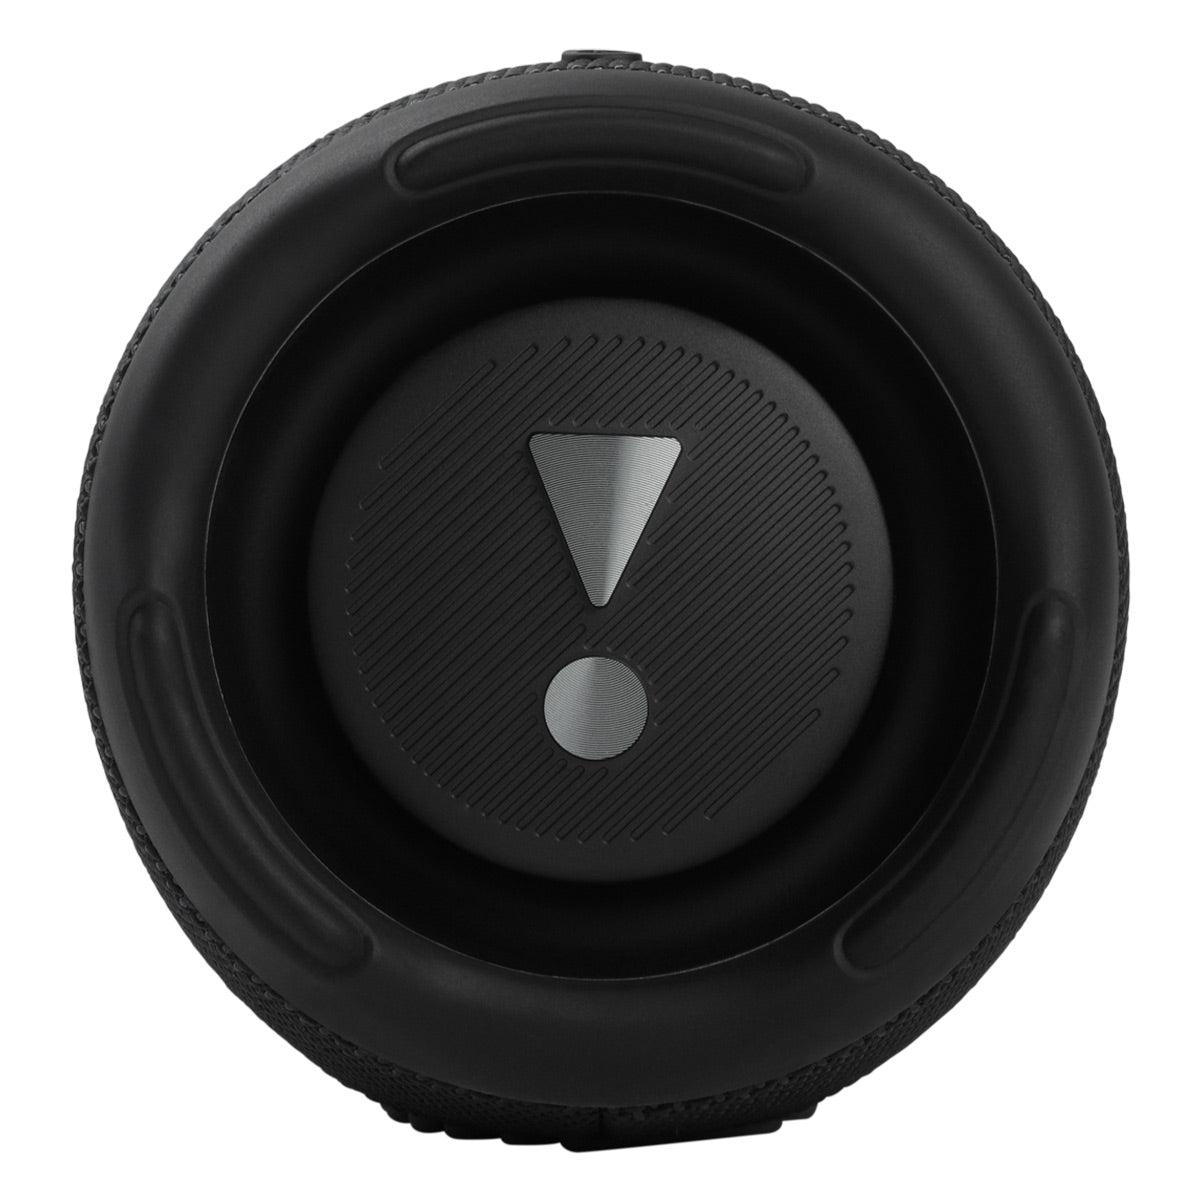 JBL Xtreme 3 Portable Bluetooth Waterproof Speakers - Pair (Black) 